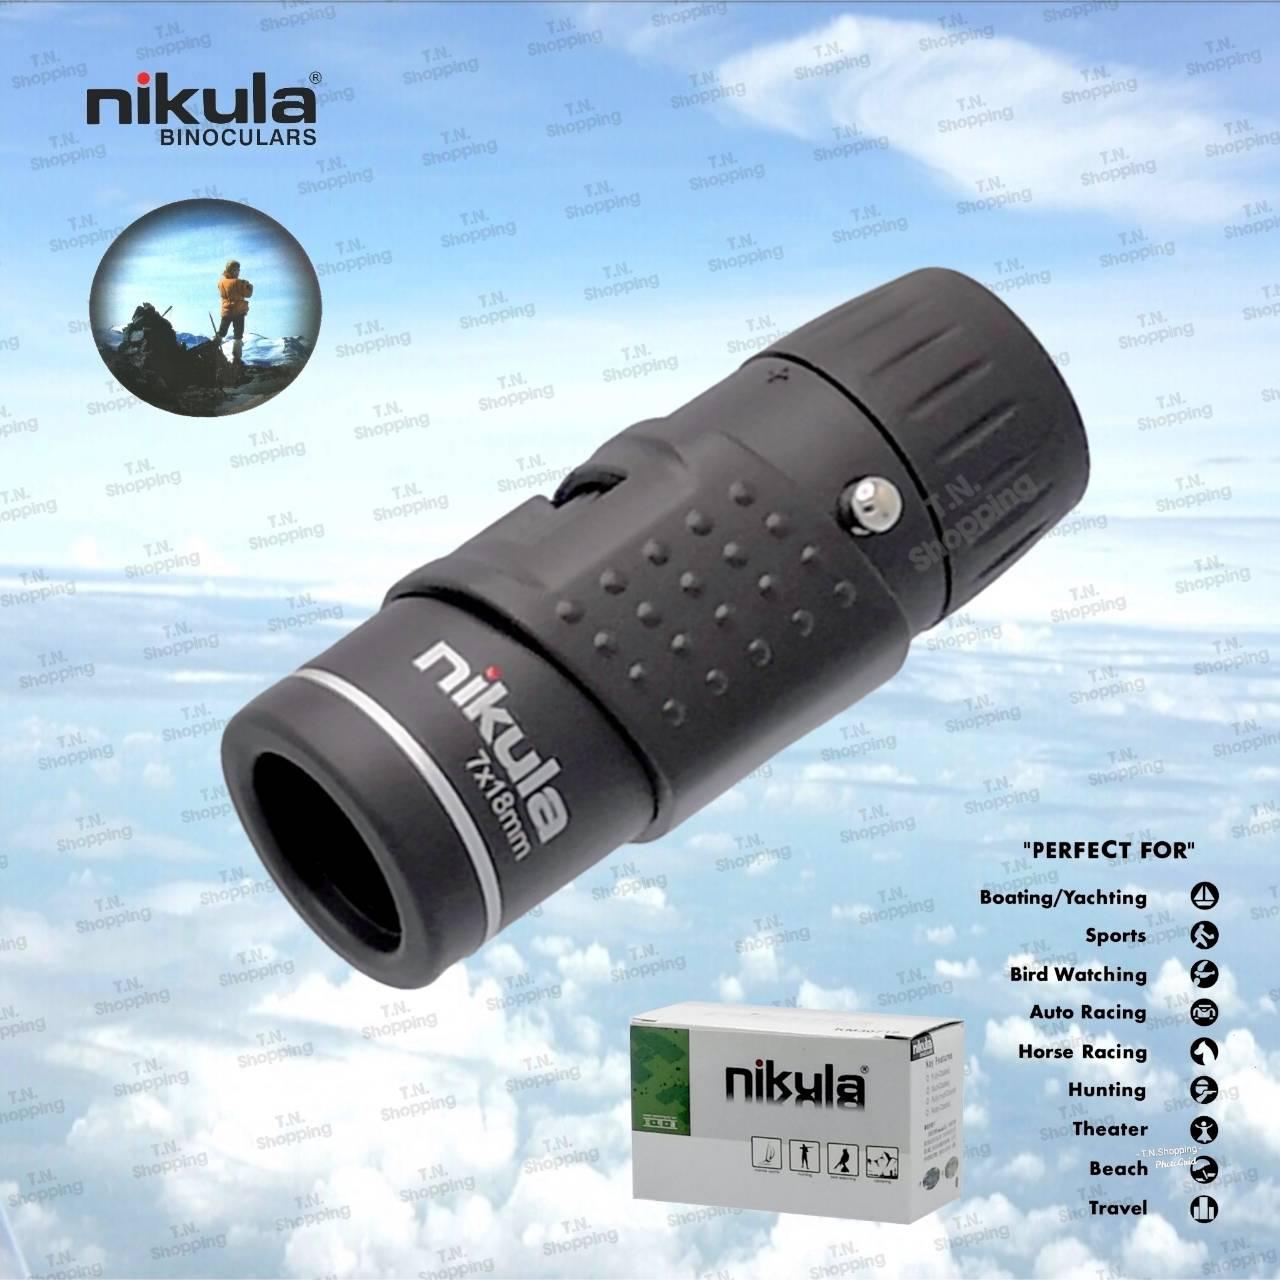 nikula กล้องส่องทางไกลตาเดียว 7x18 mm.